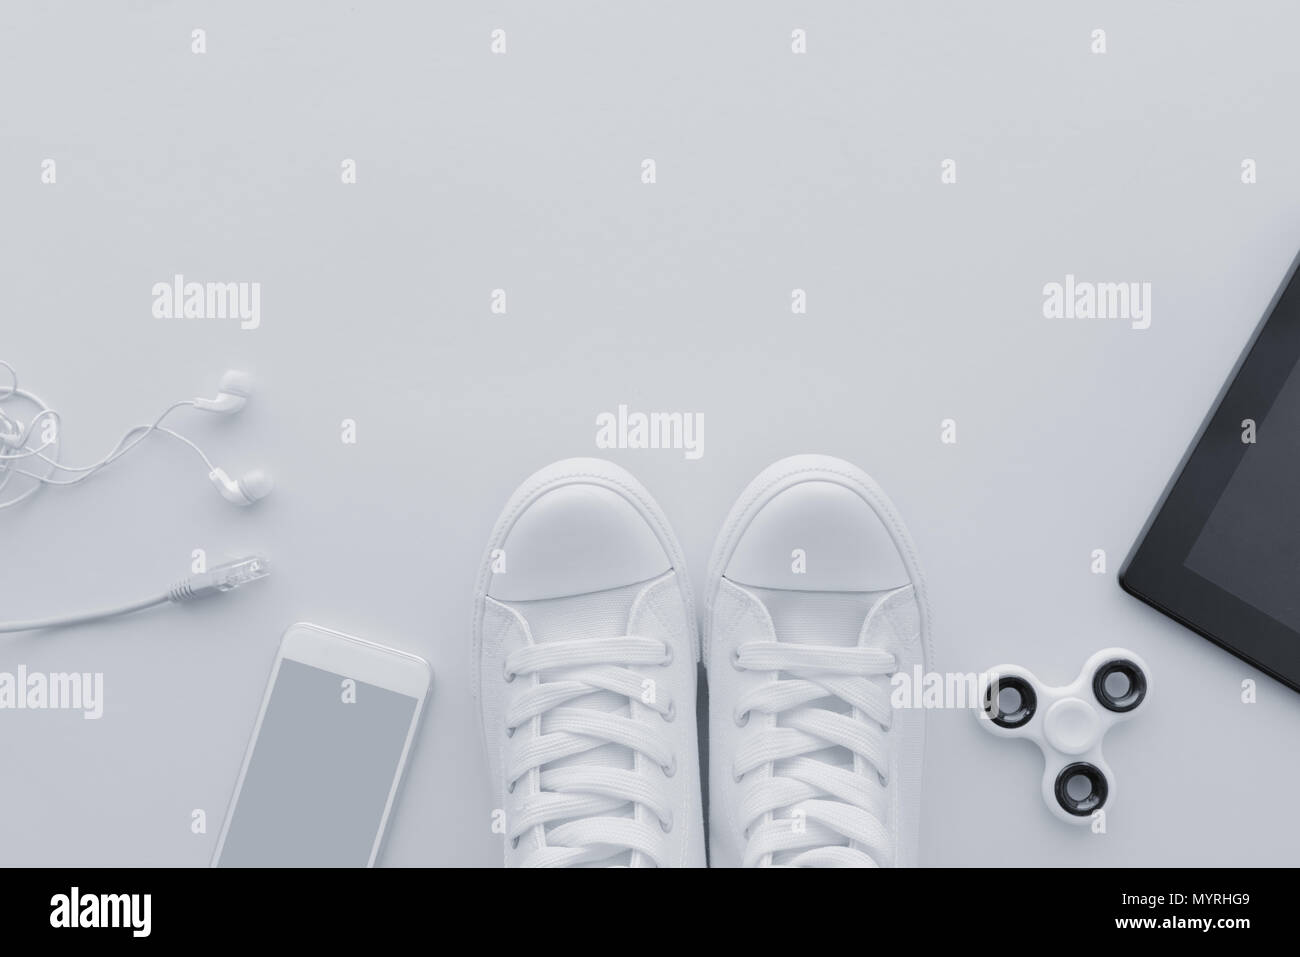 Millenniums-generation Gadgets flach Draufsicht mit Kopie Raum - minimalistische Komposition in hellem Weiß Pastelltönen einschließlich Smartphone mit earpho Stockfoto